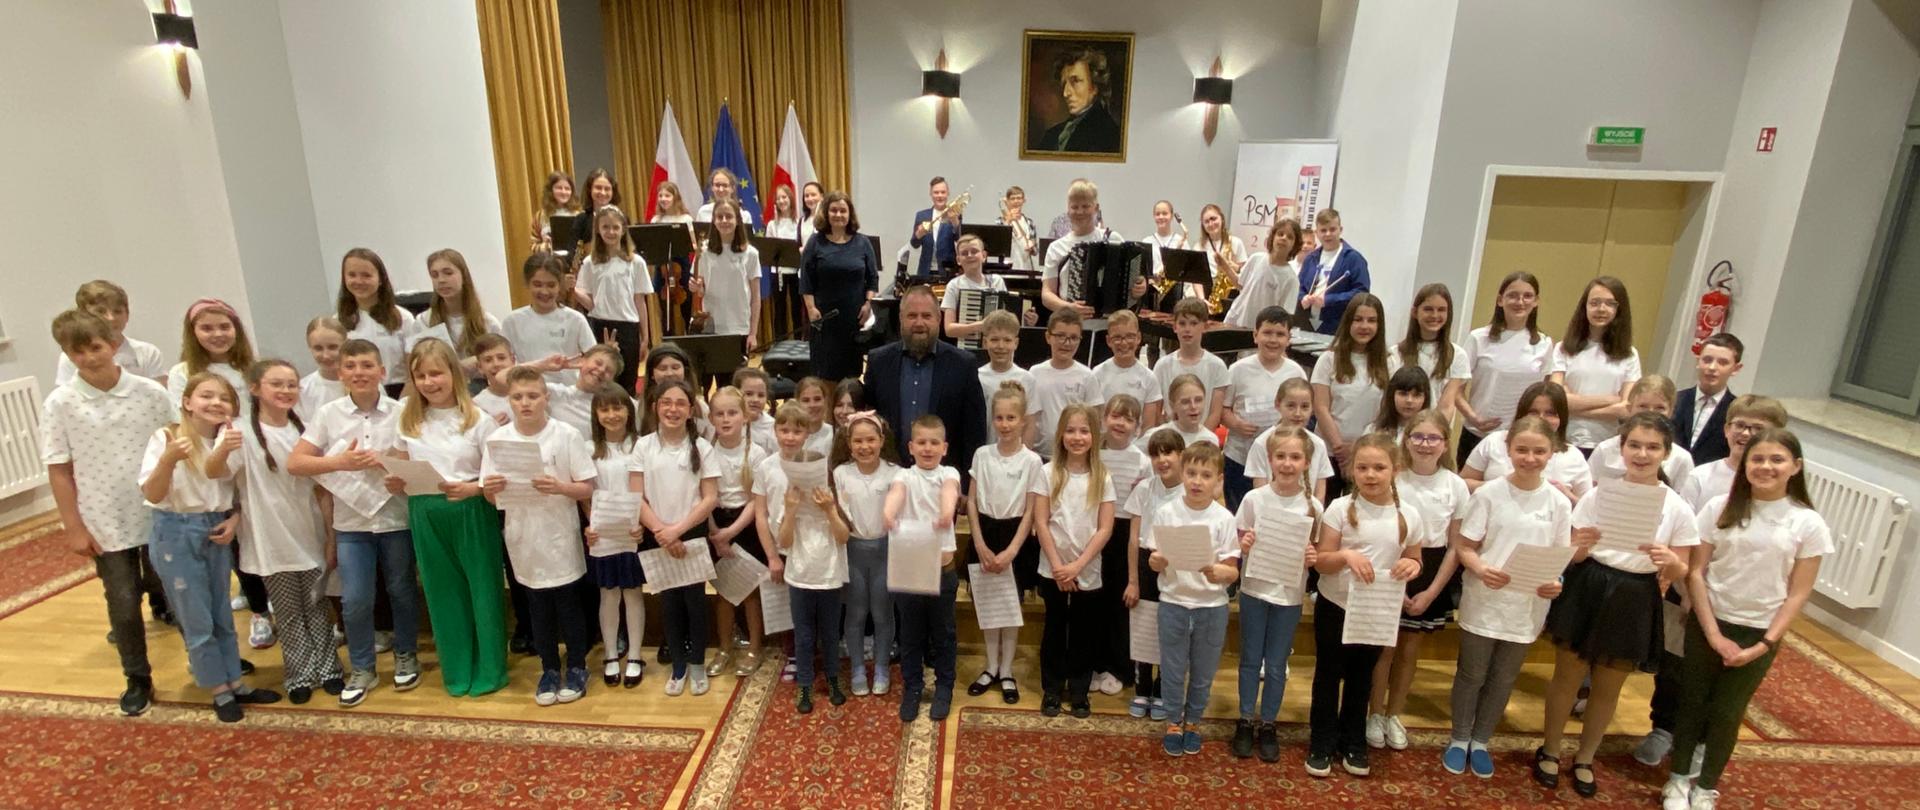 Zdjęcie przedstawia uczniów i nauczycieli szkoły muzycznej, którzy zaangażowani byli w wykonanie utworu "Zbójnicki" w dniu 25 maja 2022 r. Zdjęcie wykonano na sali koncertowej szkoły muzycznej.